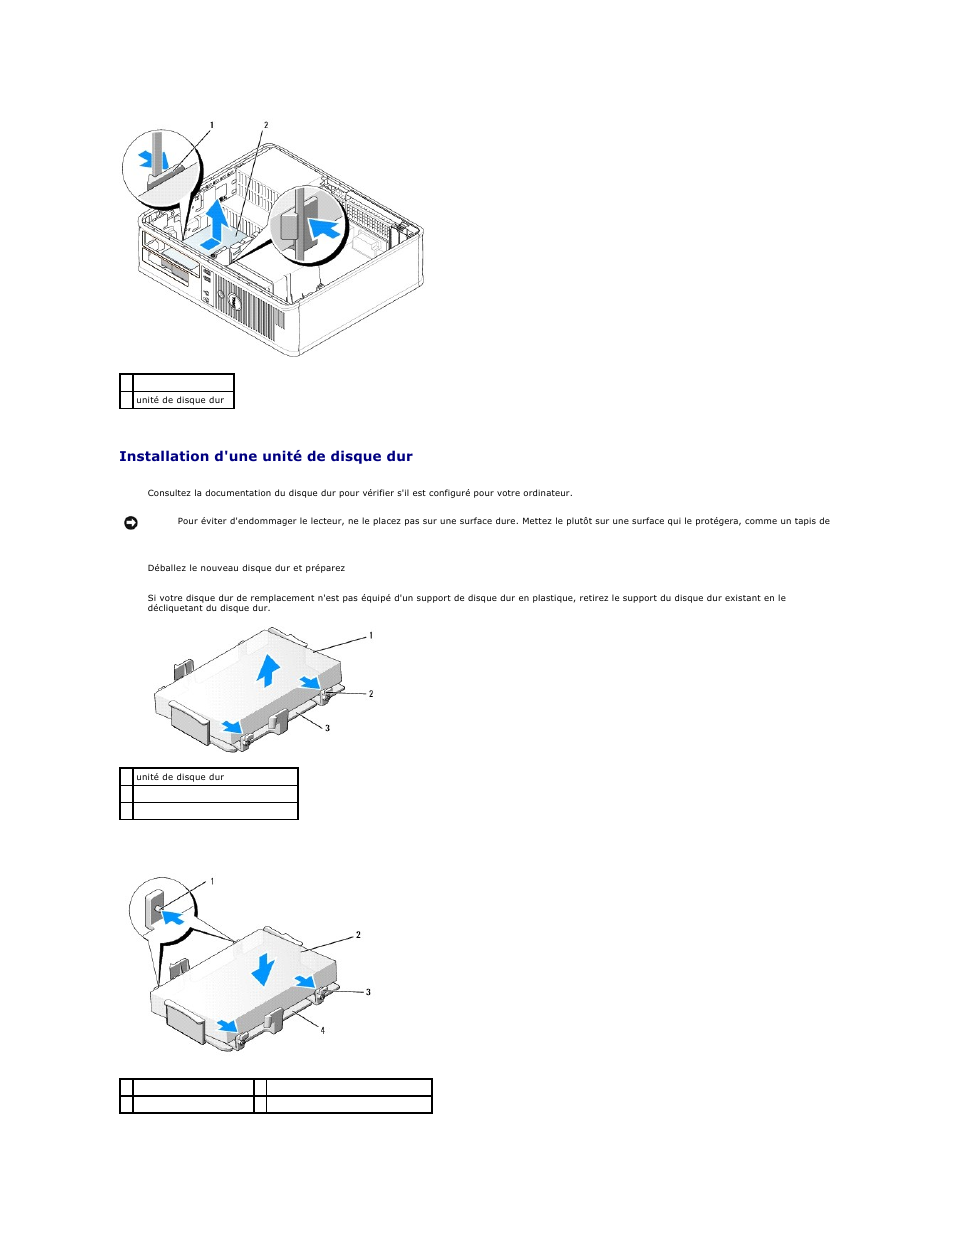 Installation d'une unité de disque dur | Dell OptiPlex 745 Manuel d'utilisation | Page 49 / 220